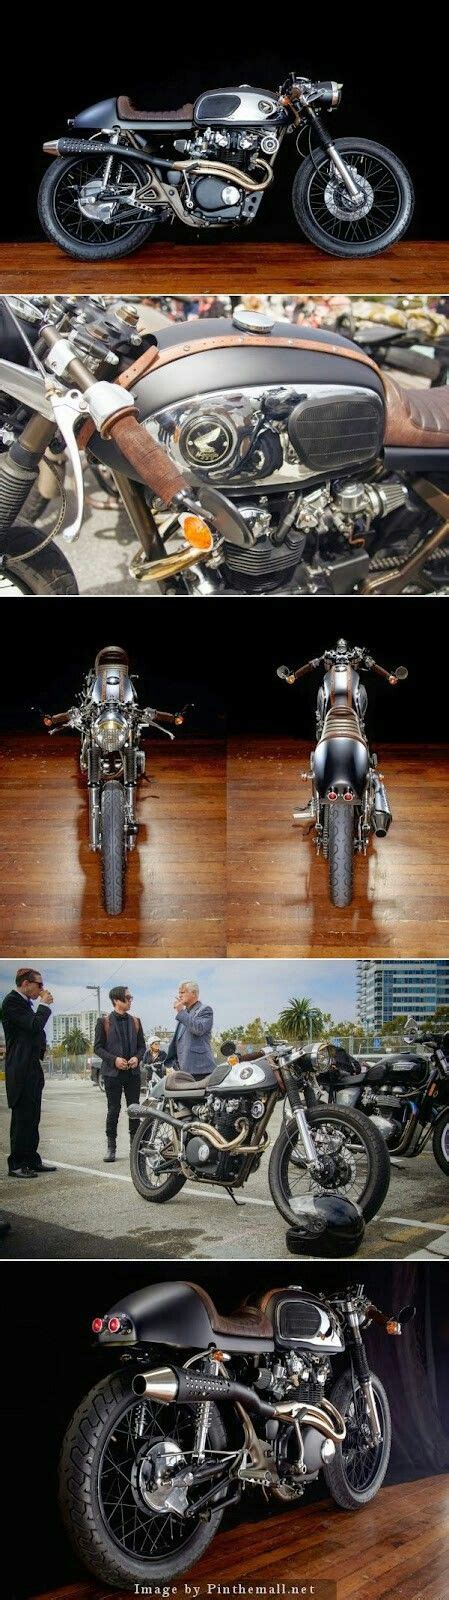 Pin de Gamaliel Sotomayor en Motorcycles en 2020 | Cafe racer, Europeos ...